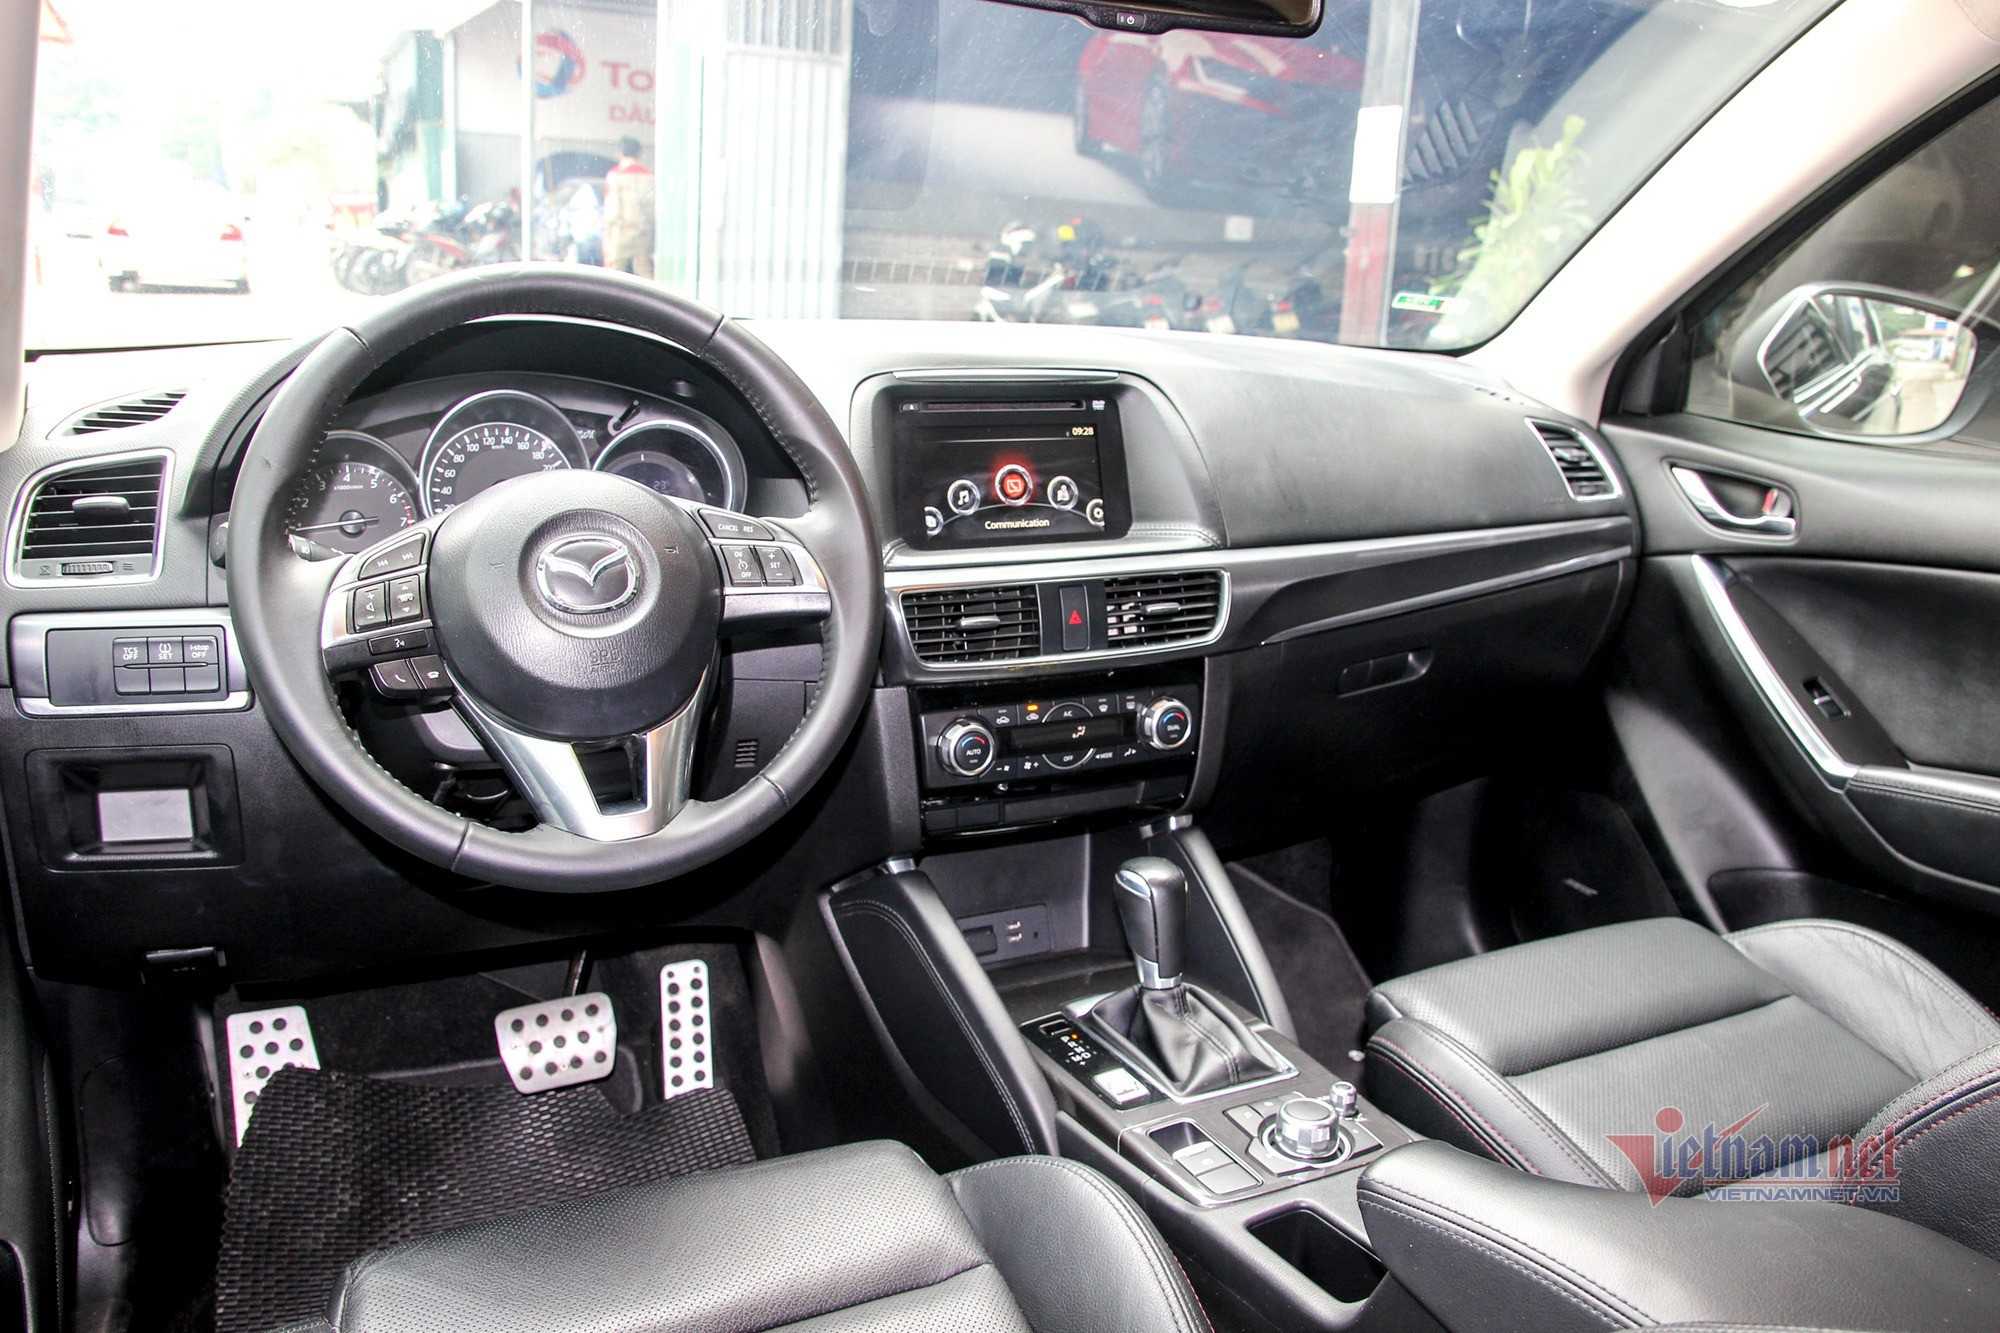 Mazda CX-5 cũ - Có nên bỏ gần 800 triệu mua đồ cũ Mazda CX-5 cũ - Có nên bỏ gần 800 triệu mua đồ cũ?